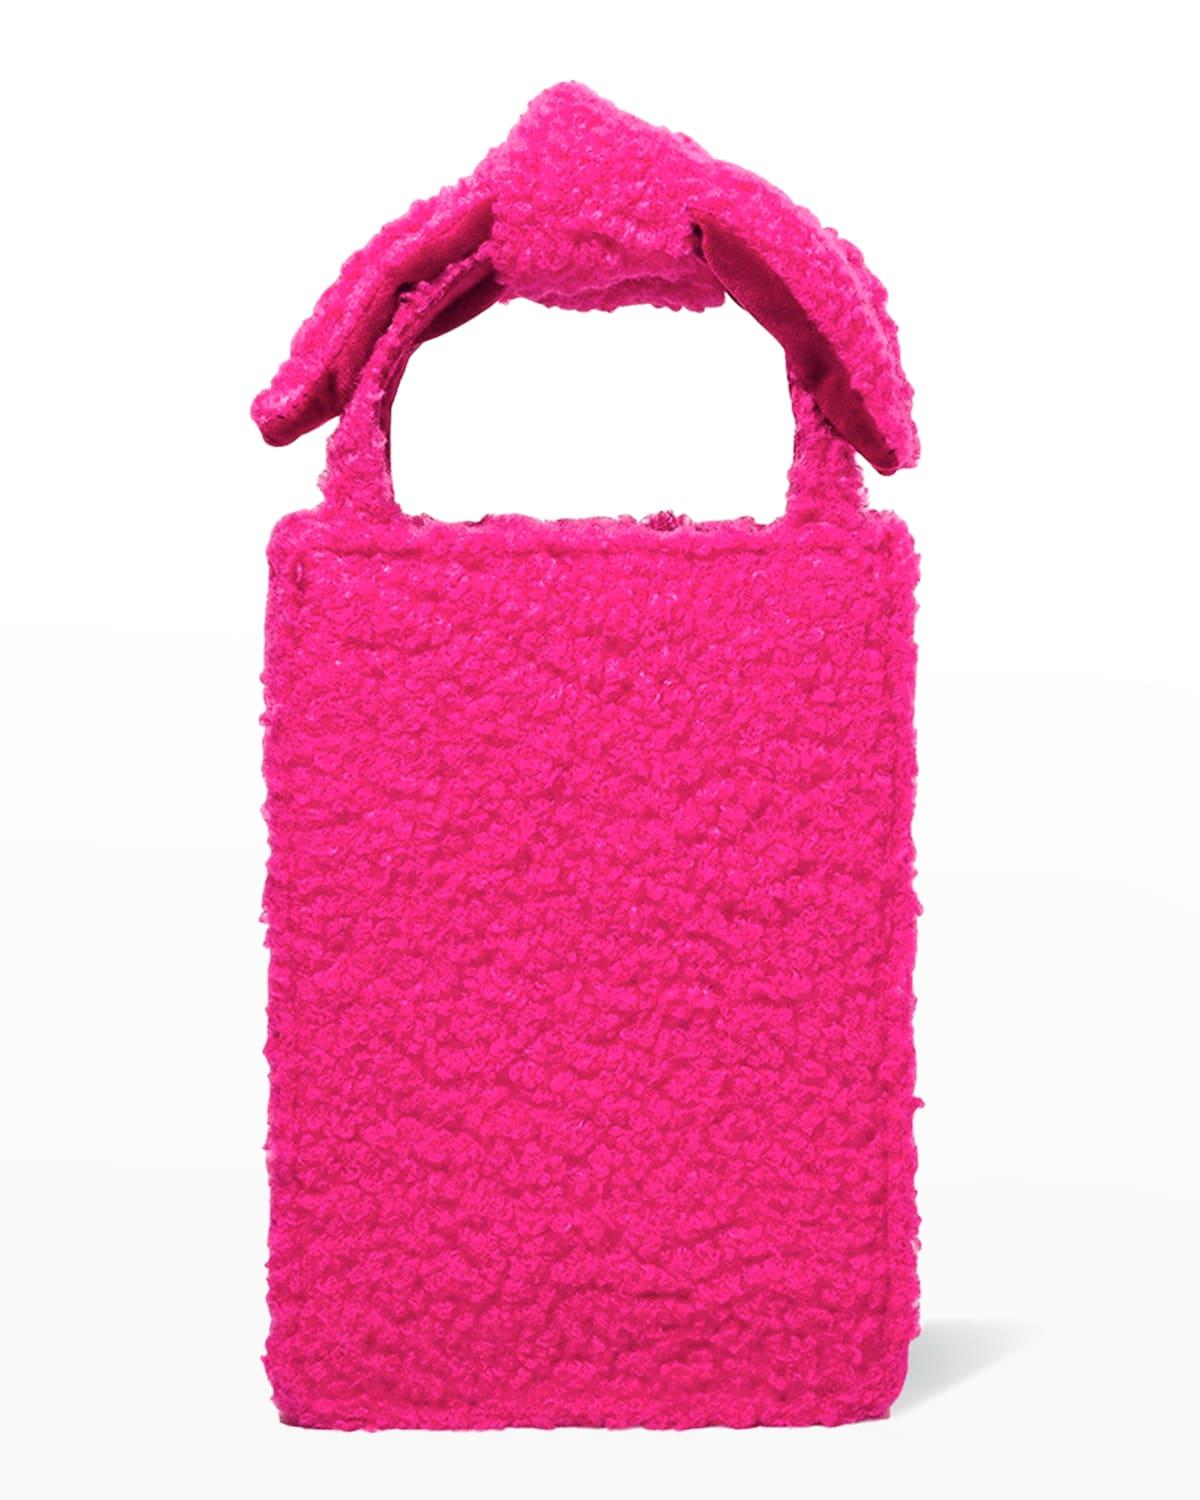 Lele Sadoughi Multi Tweed Hazel Top Handle Bag